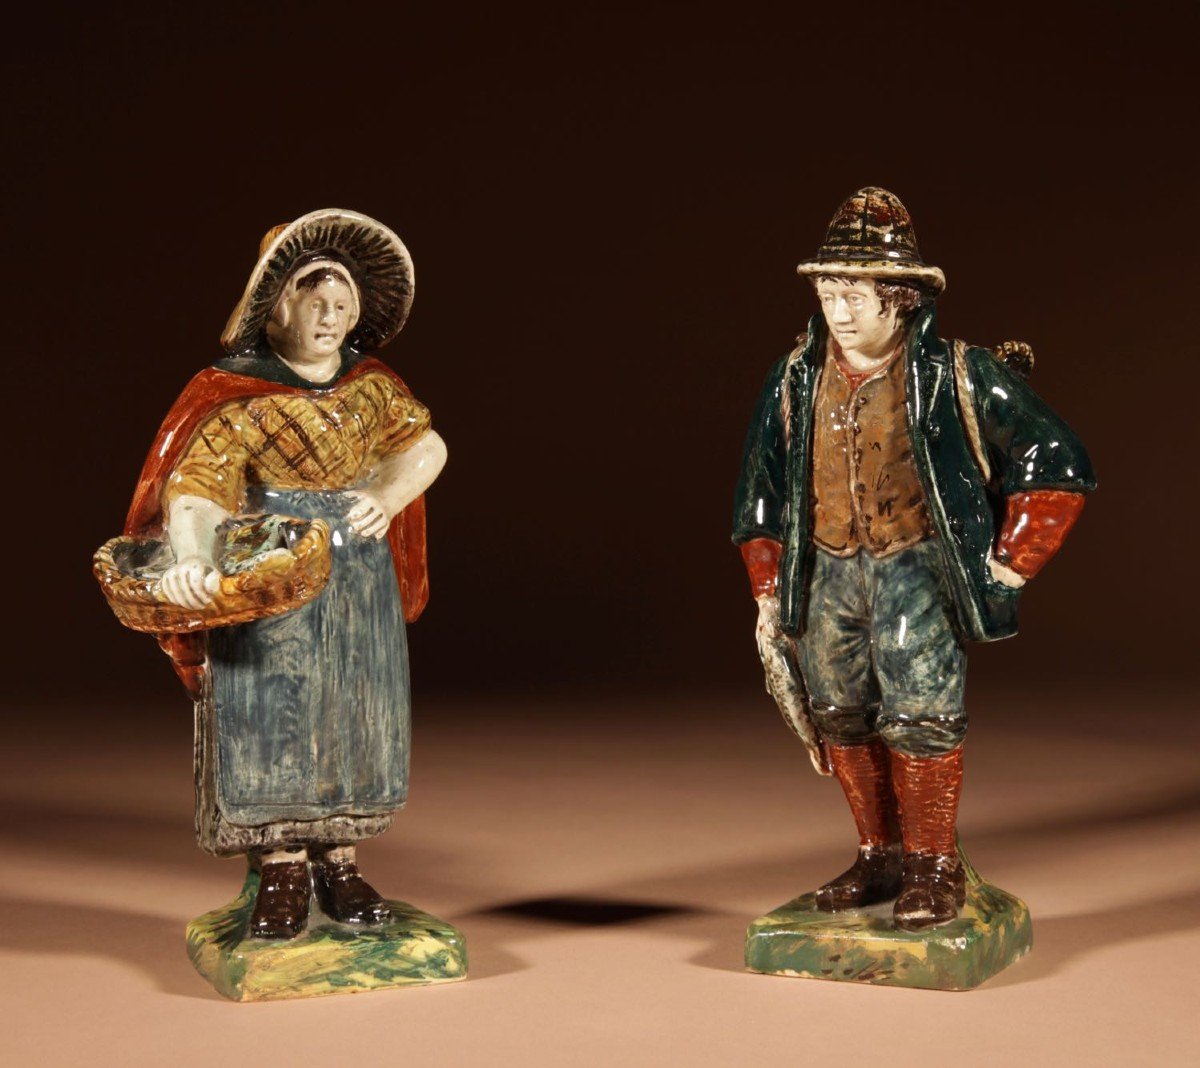  Une Rare Paire De Figurines Hollandaises De Rozenburg, Montrant Un Pêcheur Et Une Femme. Marqu